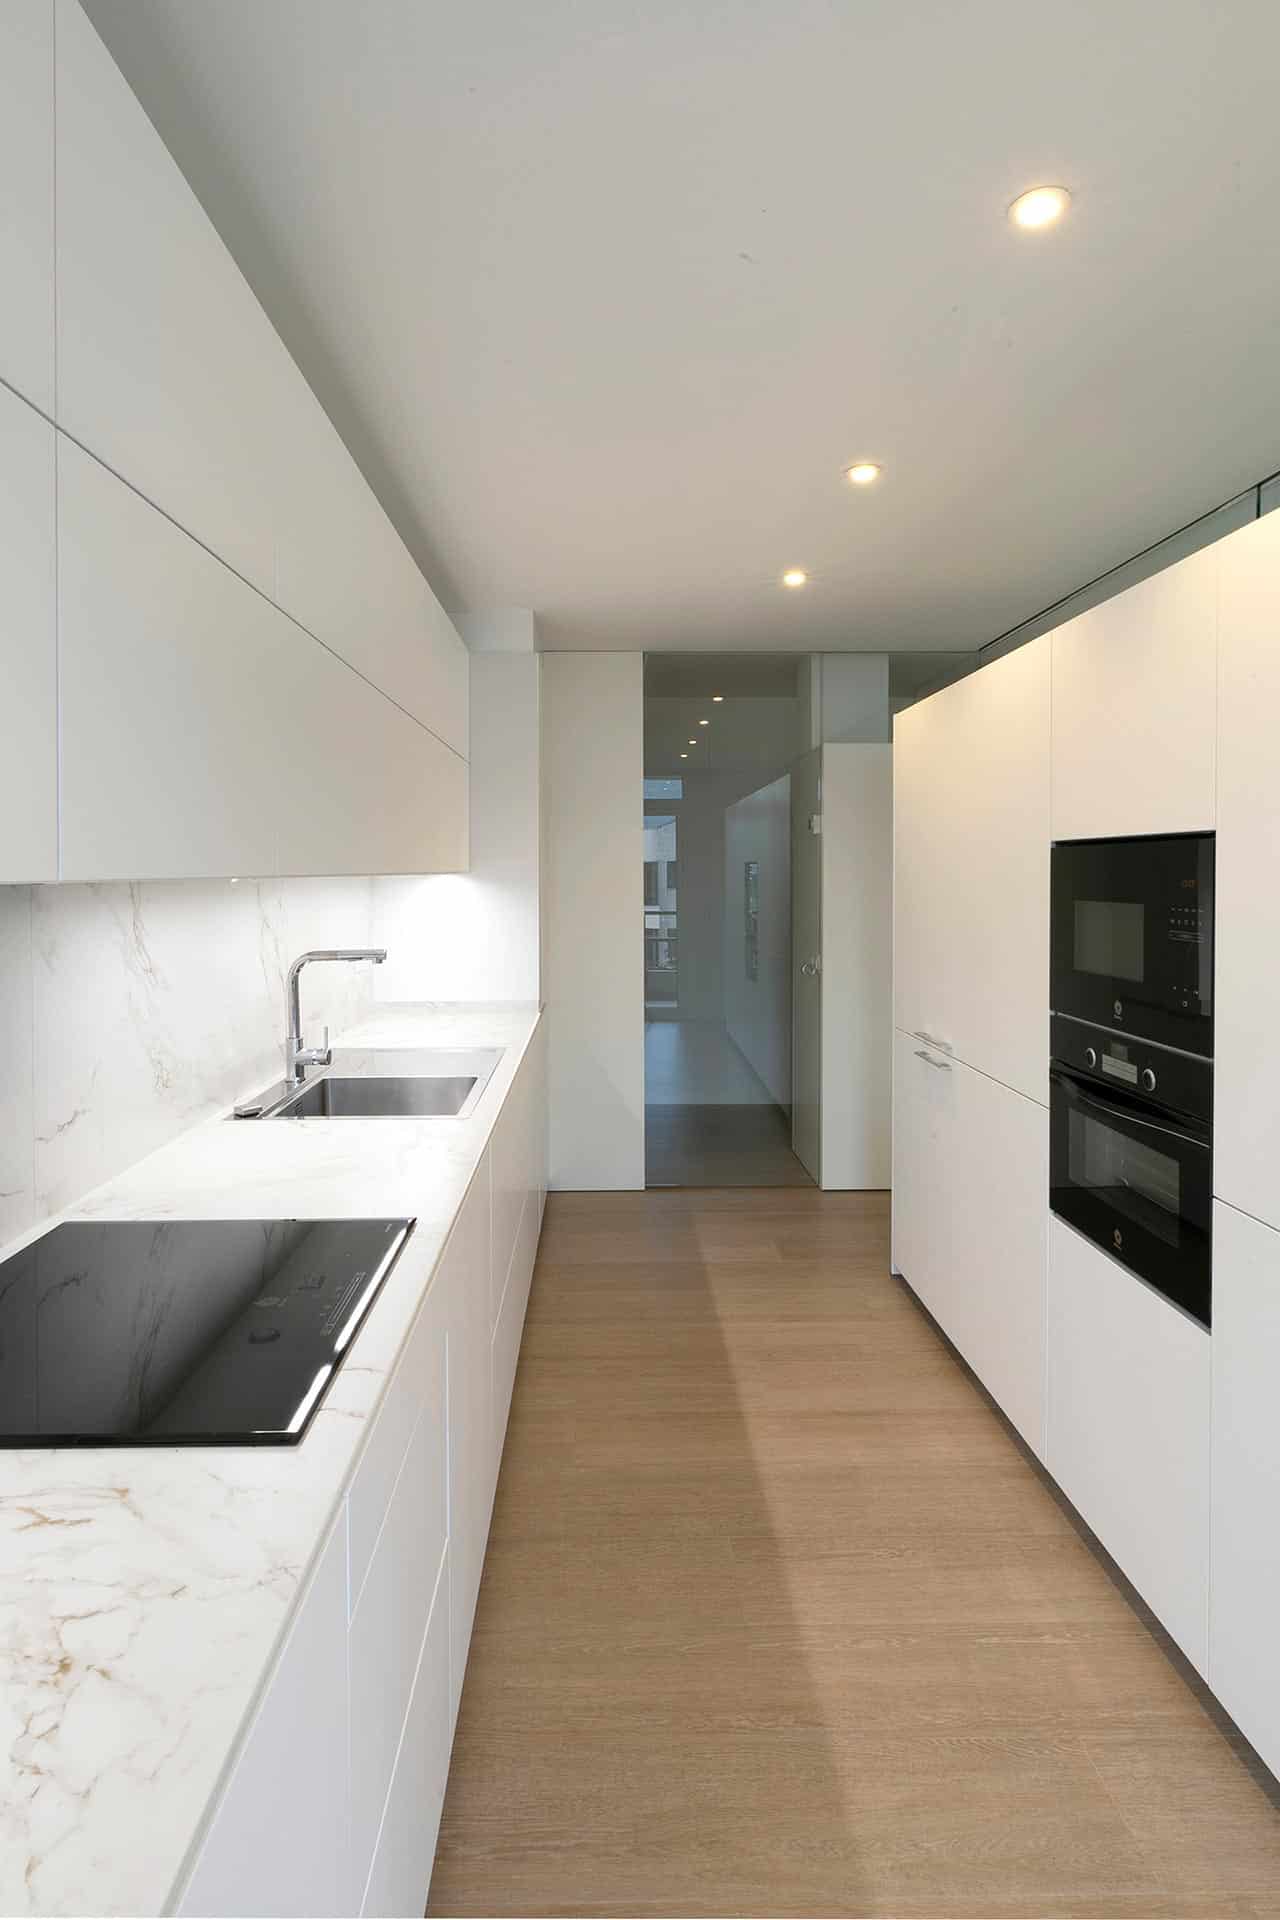 Cocina blanca minimalista diseñada por Moah Arquitectos en Cantabria